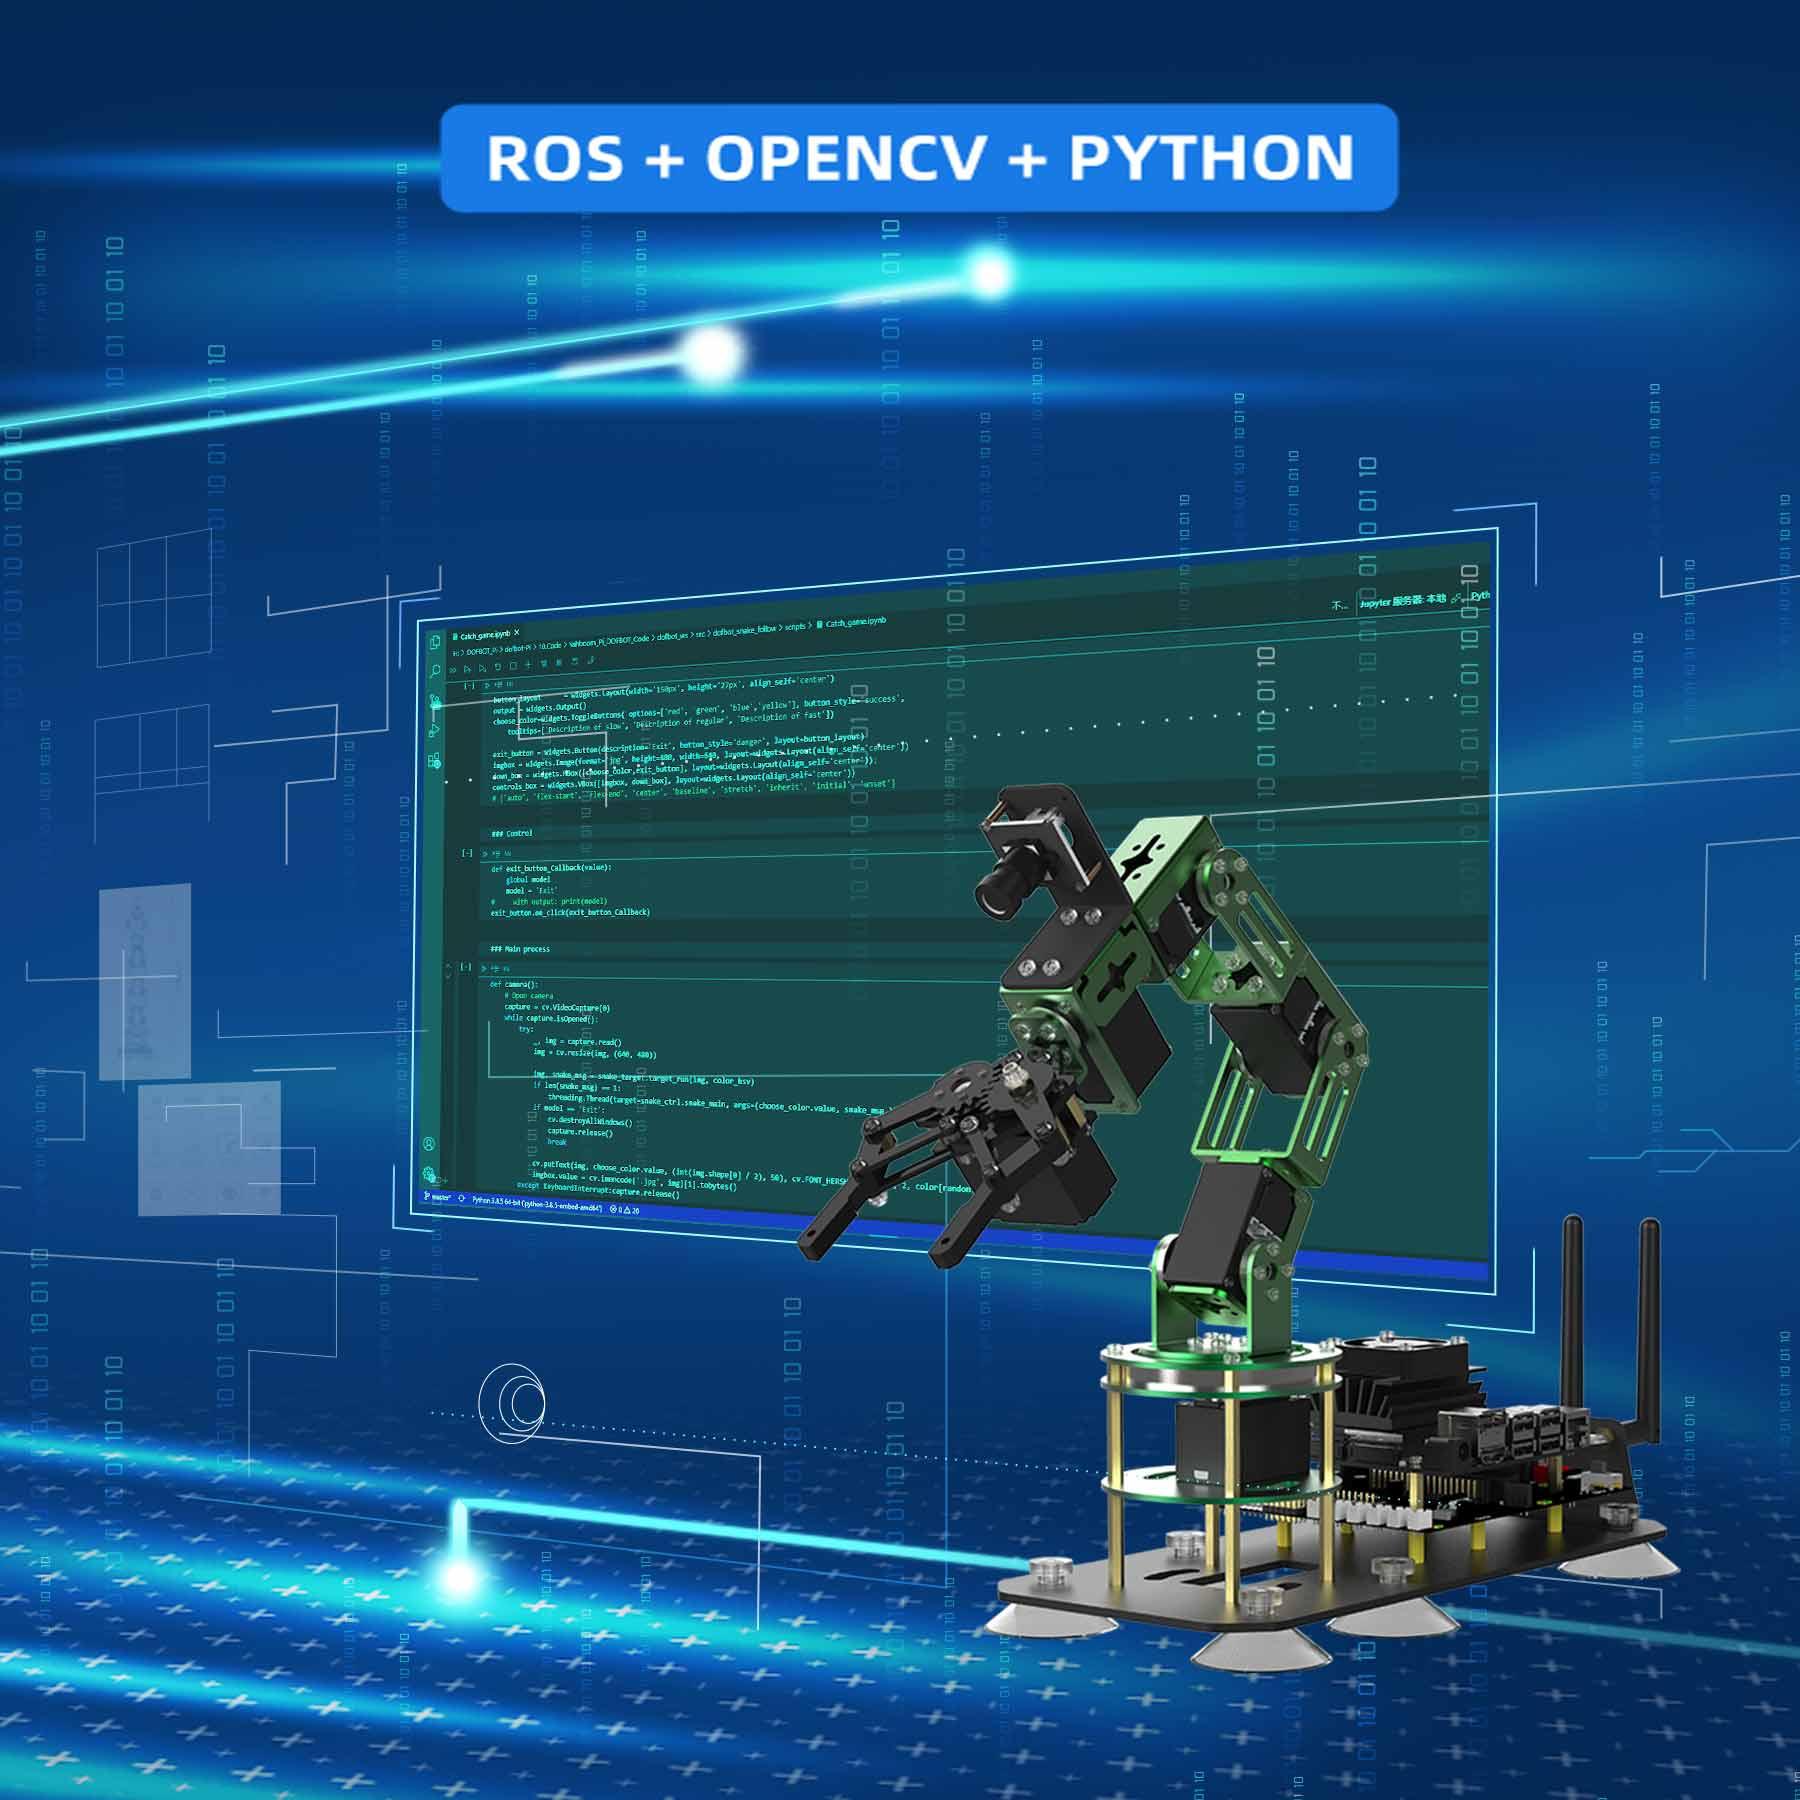 Yahboom DOFBOT AI Vision Robotic Arm ROS STEM Education Python Programming Robot for Jetson NANO 4GB(B01/SUB)